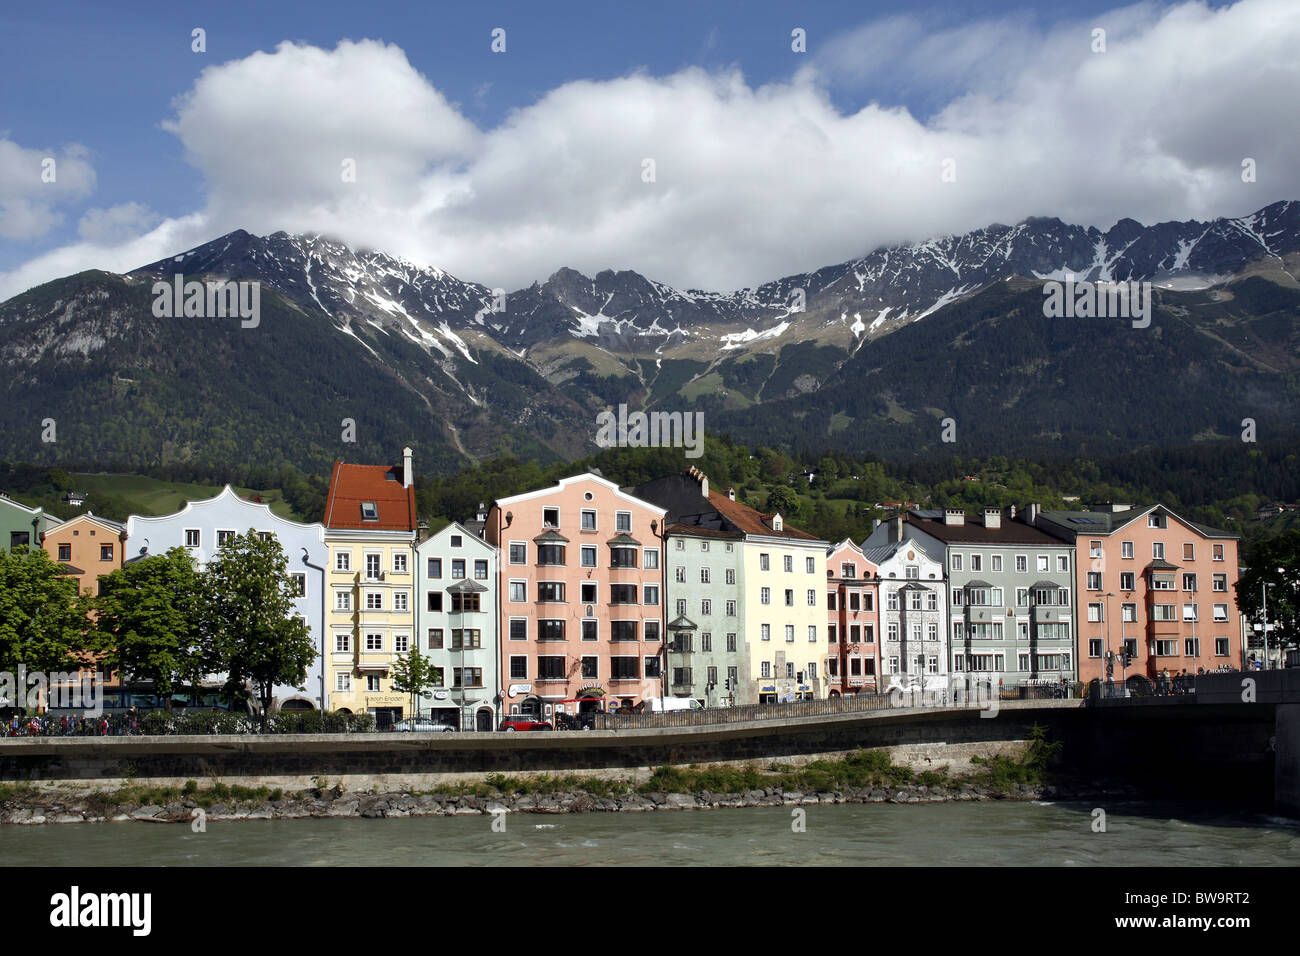 River Inn, Innsbruck, Tyrol, Austria Stock Photo